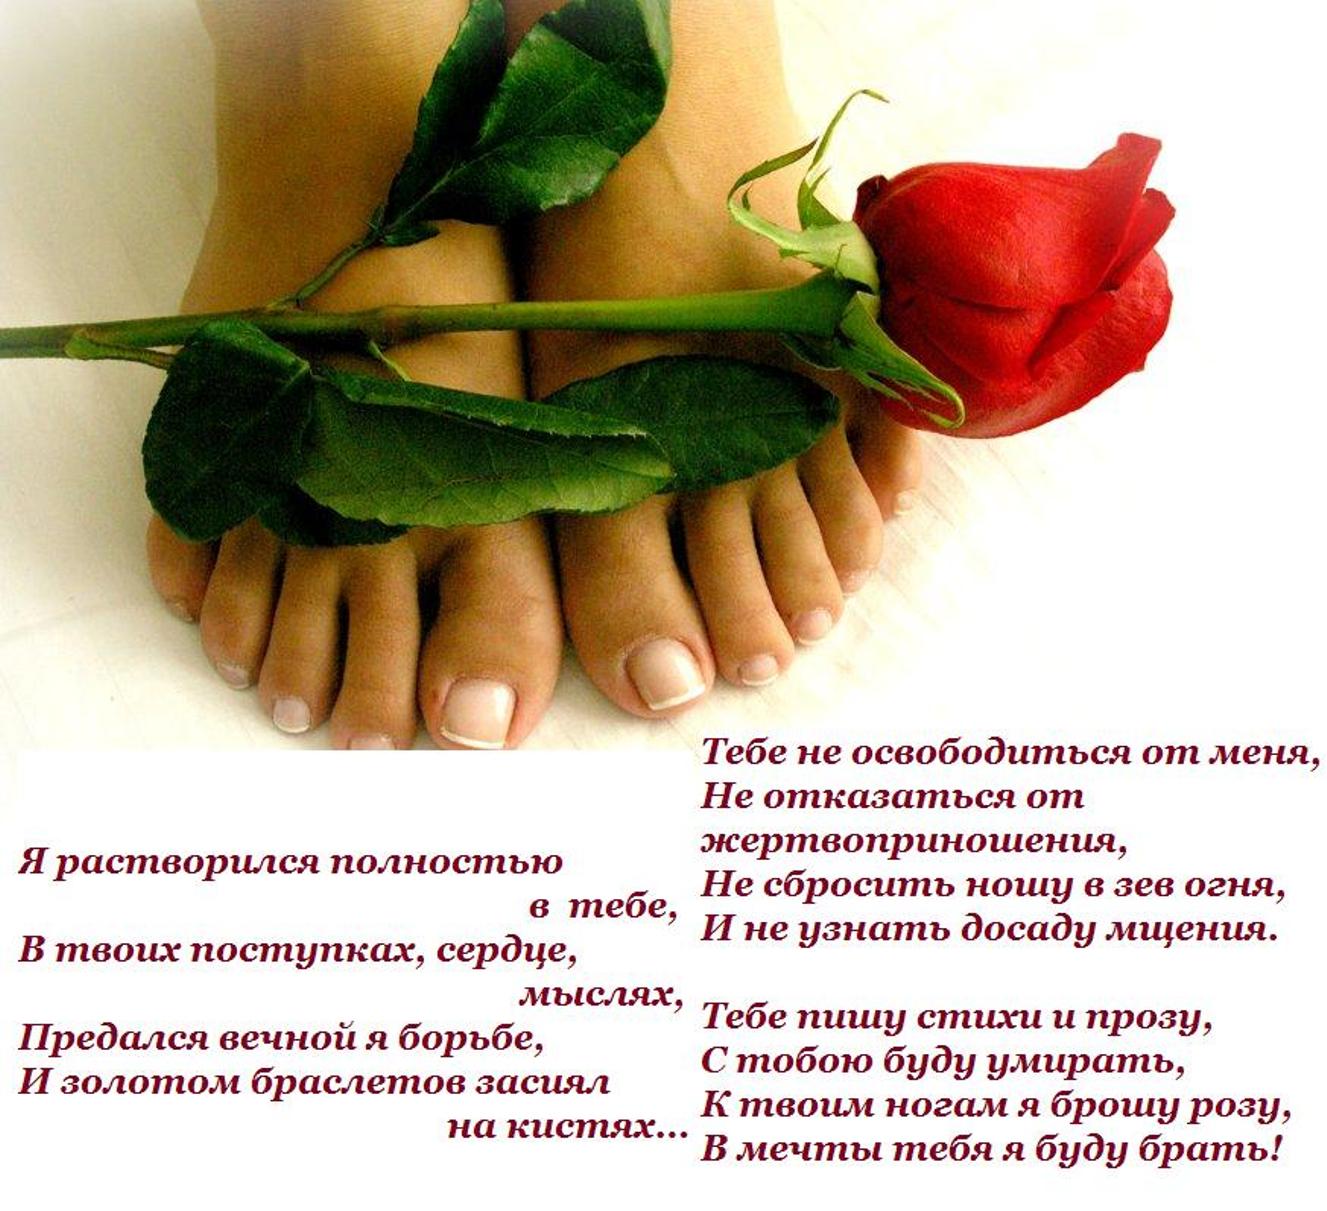 Целует ноги красивой. Цветы к ногам женщины. Розы у ног женщины. Цветы к ногам любимой.